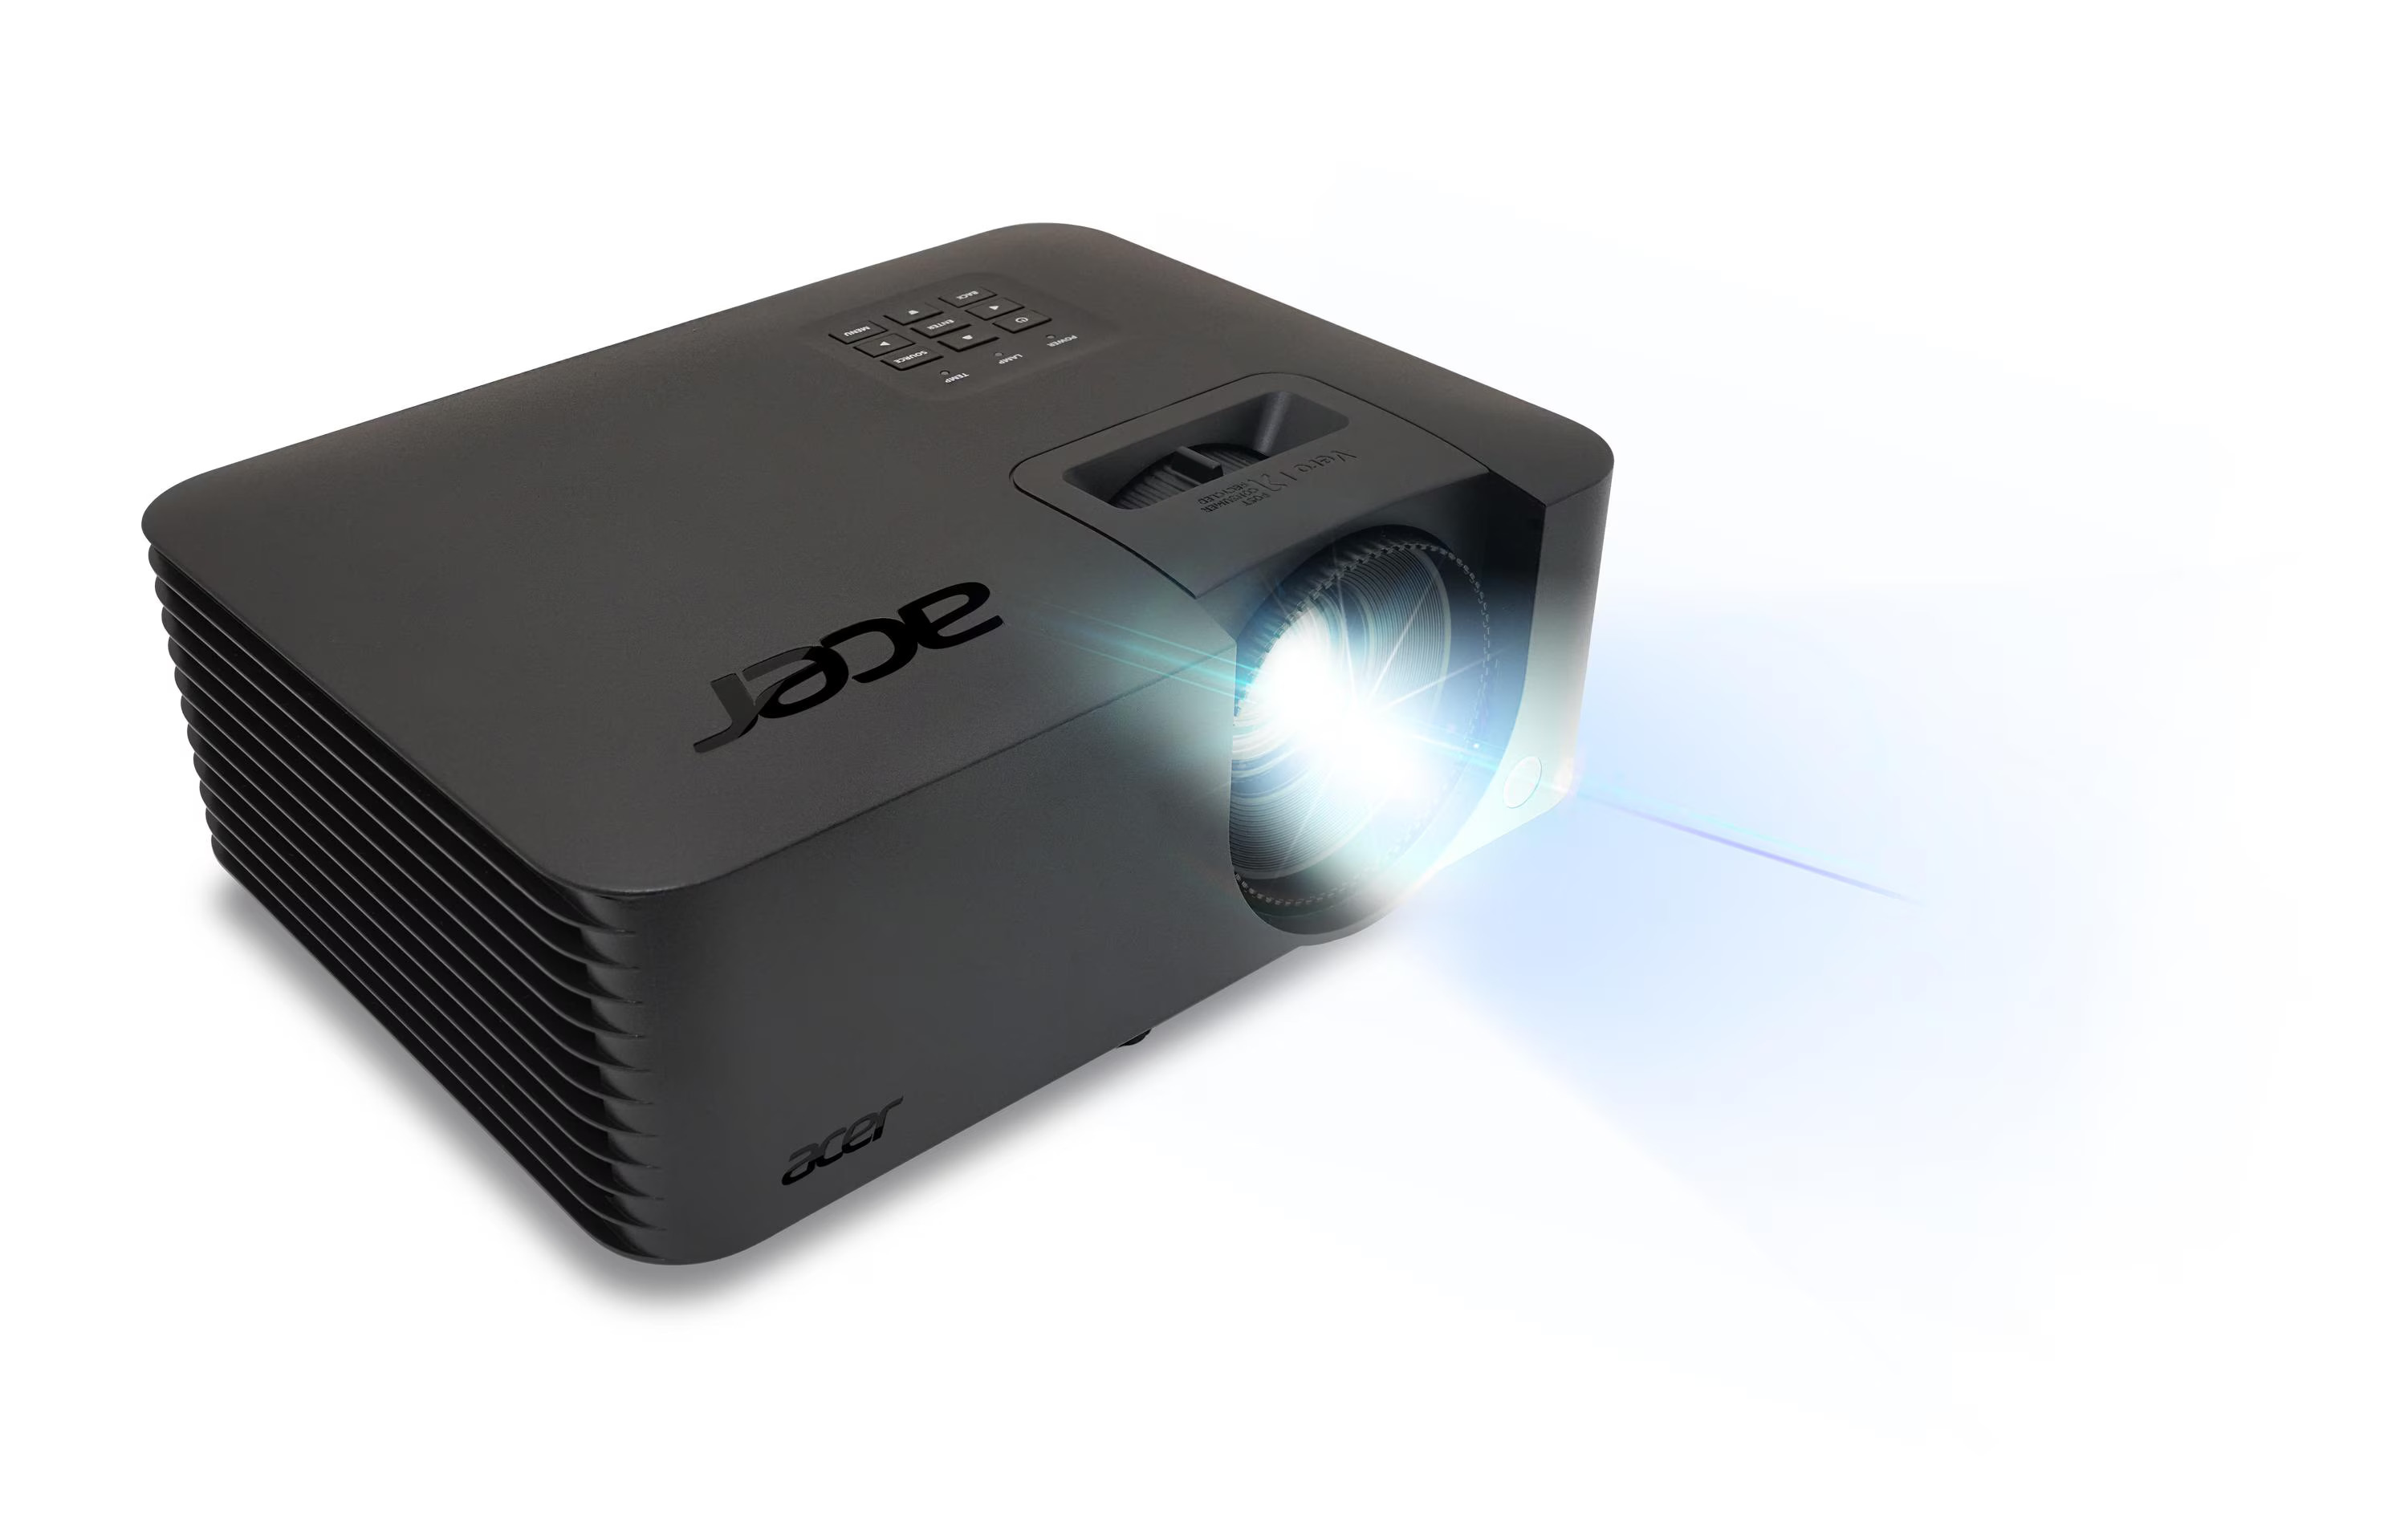 Acer DLP Projektor PL2520i (Laser-Beamer)